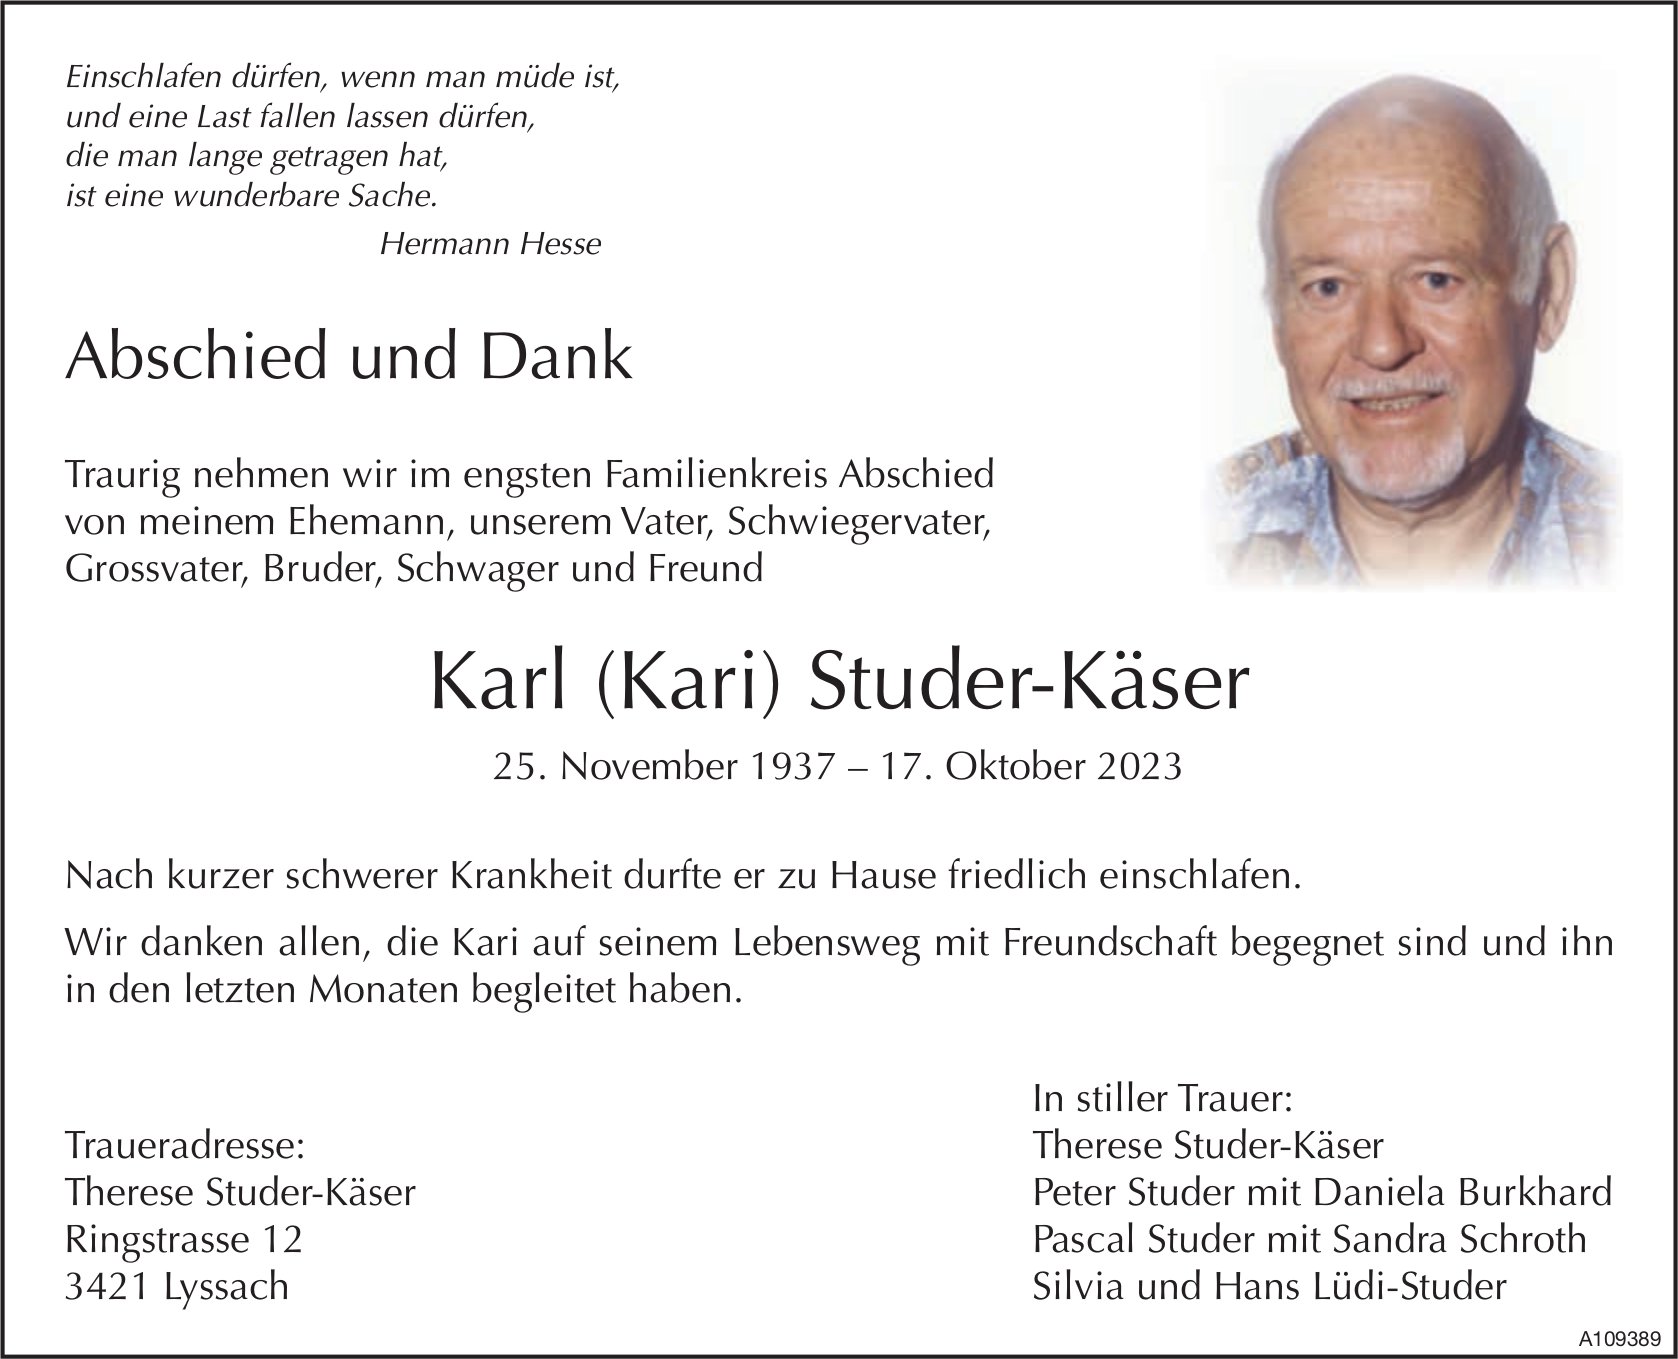 Karl (Kari) Studer-Käser, Oktober 2023 / TA